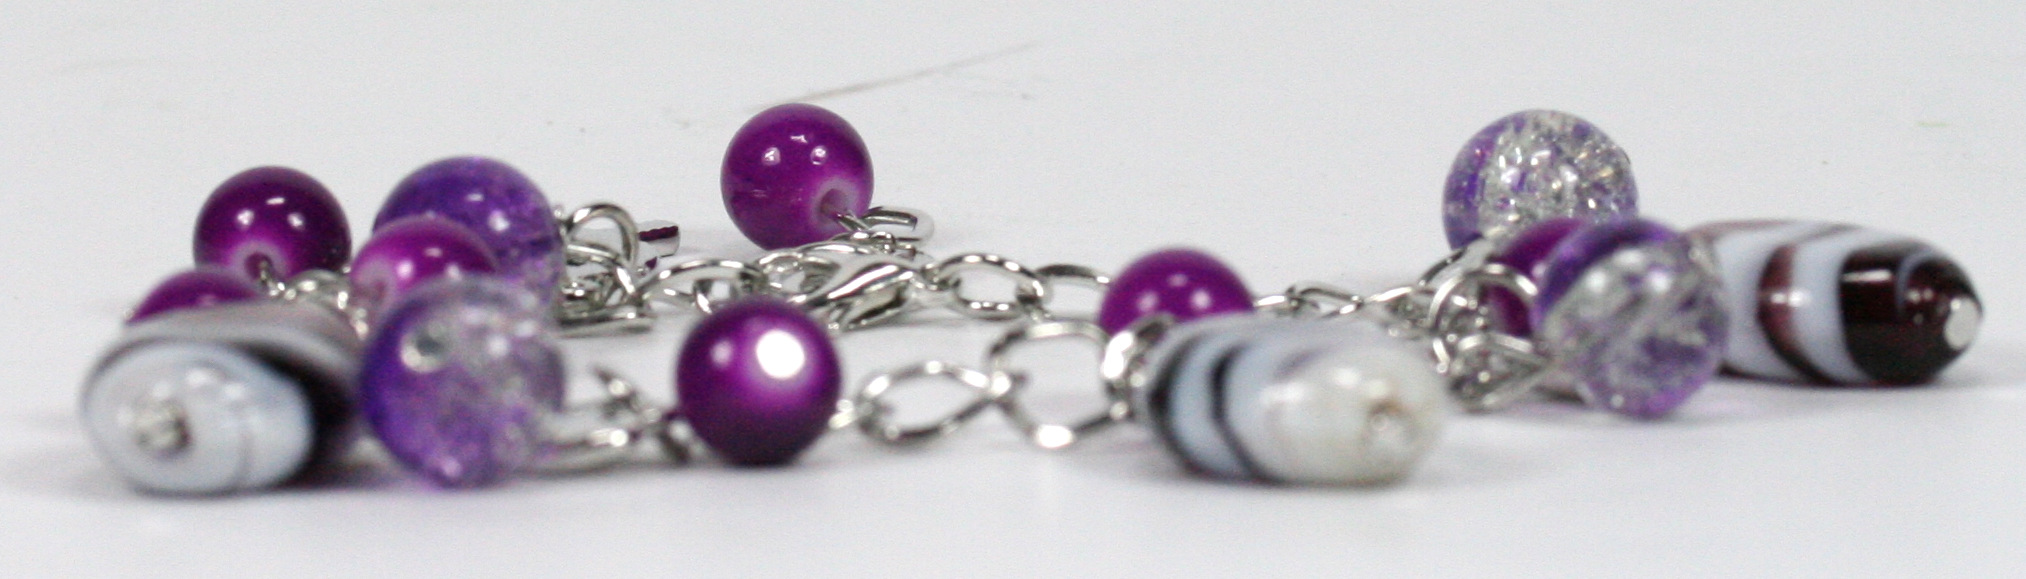 Armband - Violette Perlen & Fisch